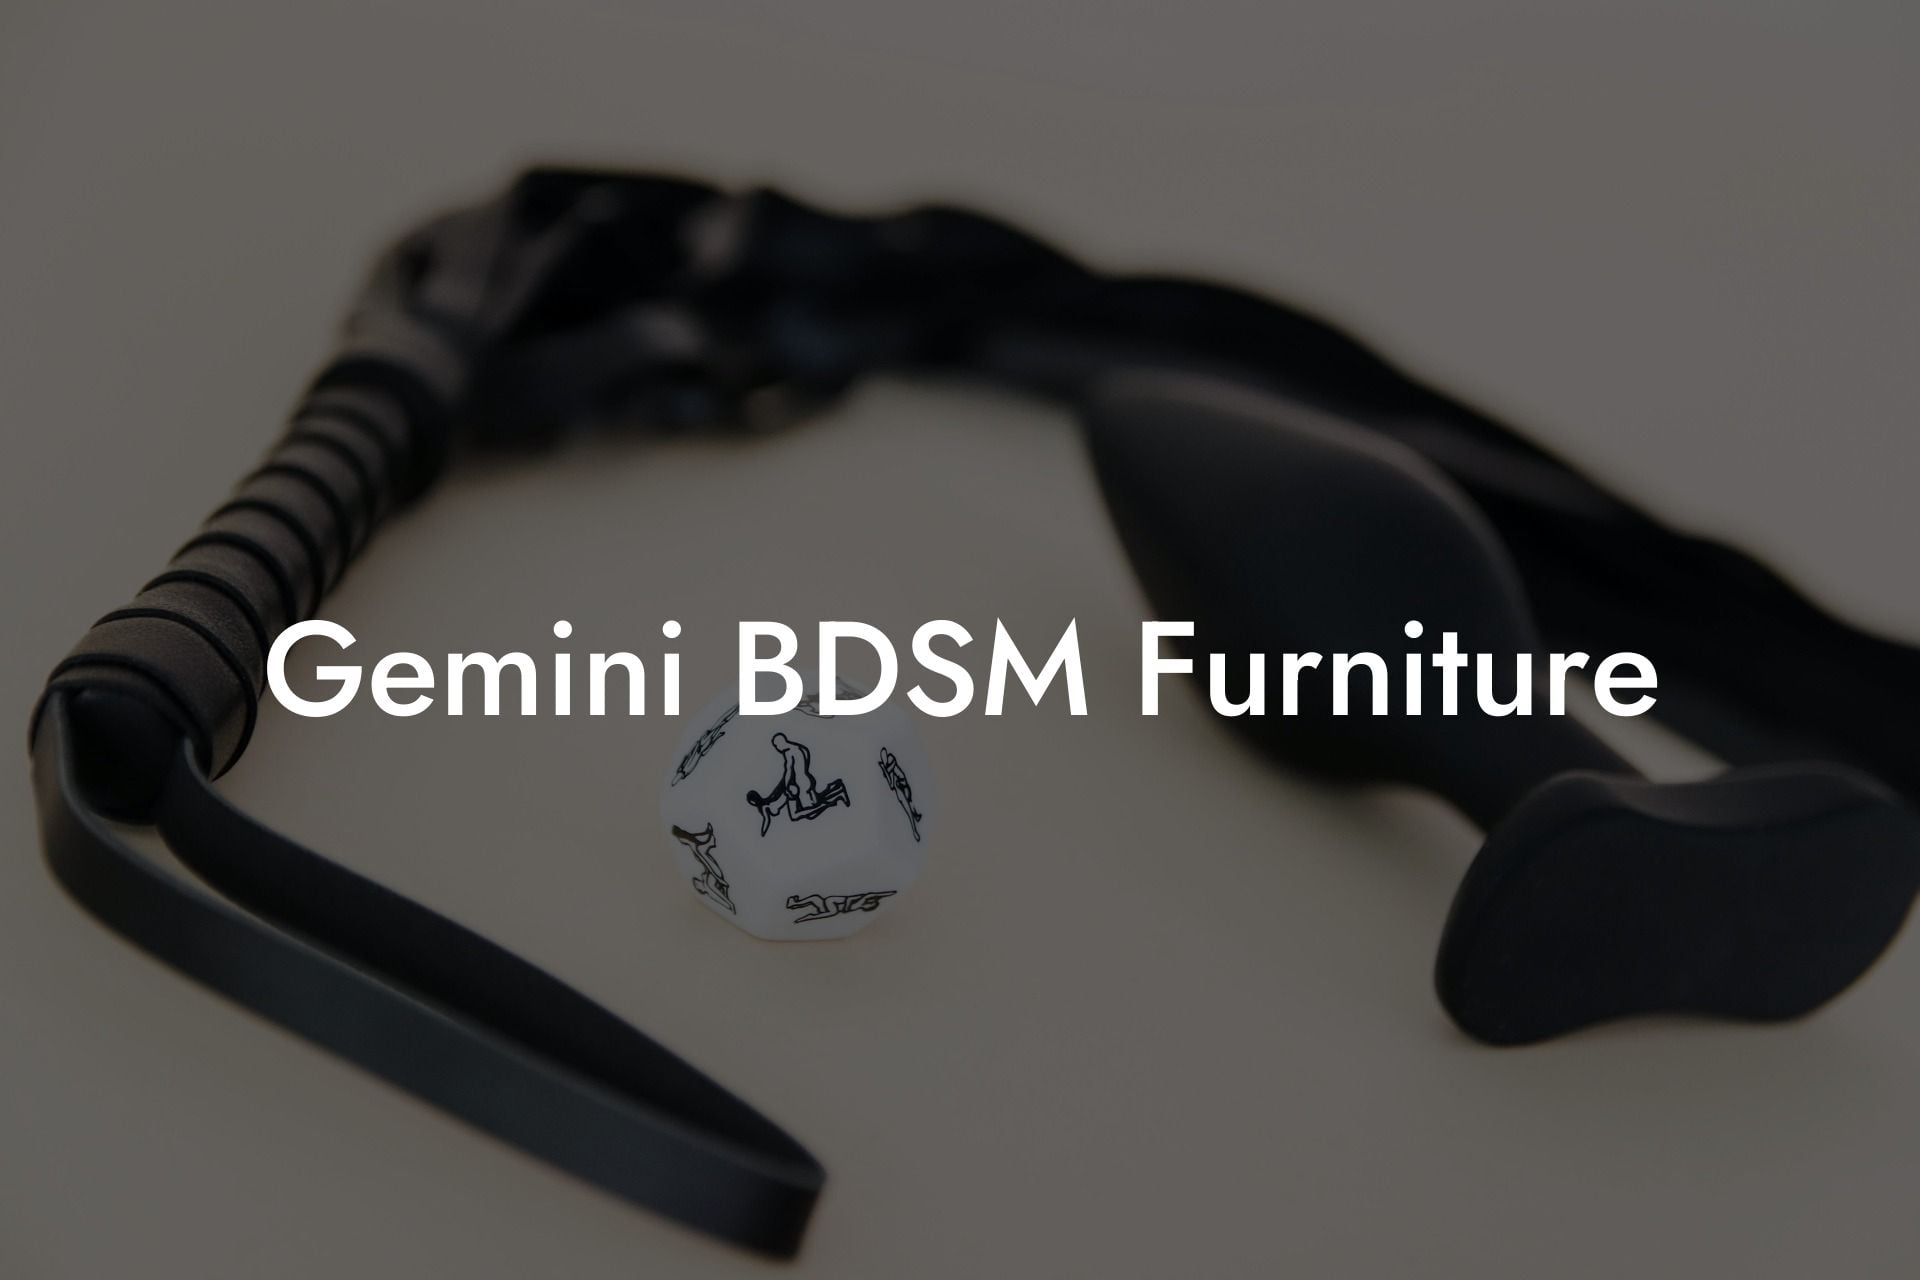 Gemini BDSM Furniture